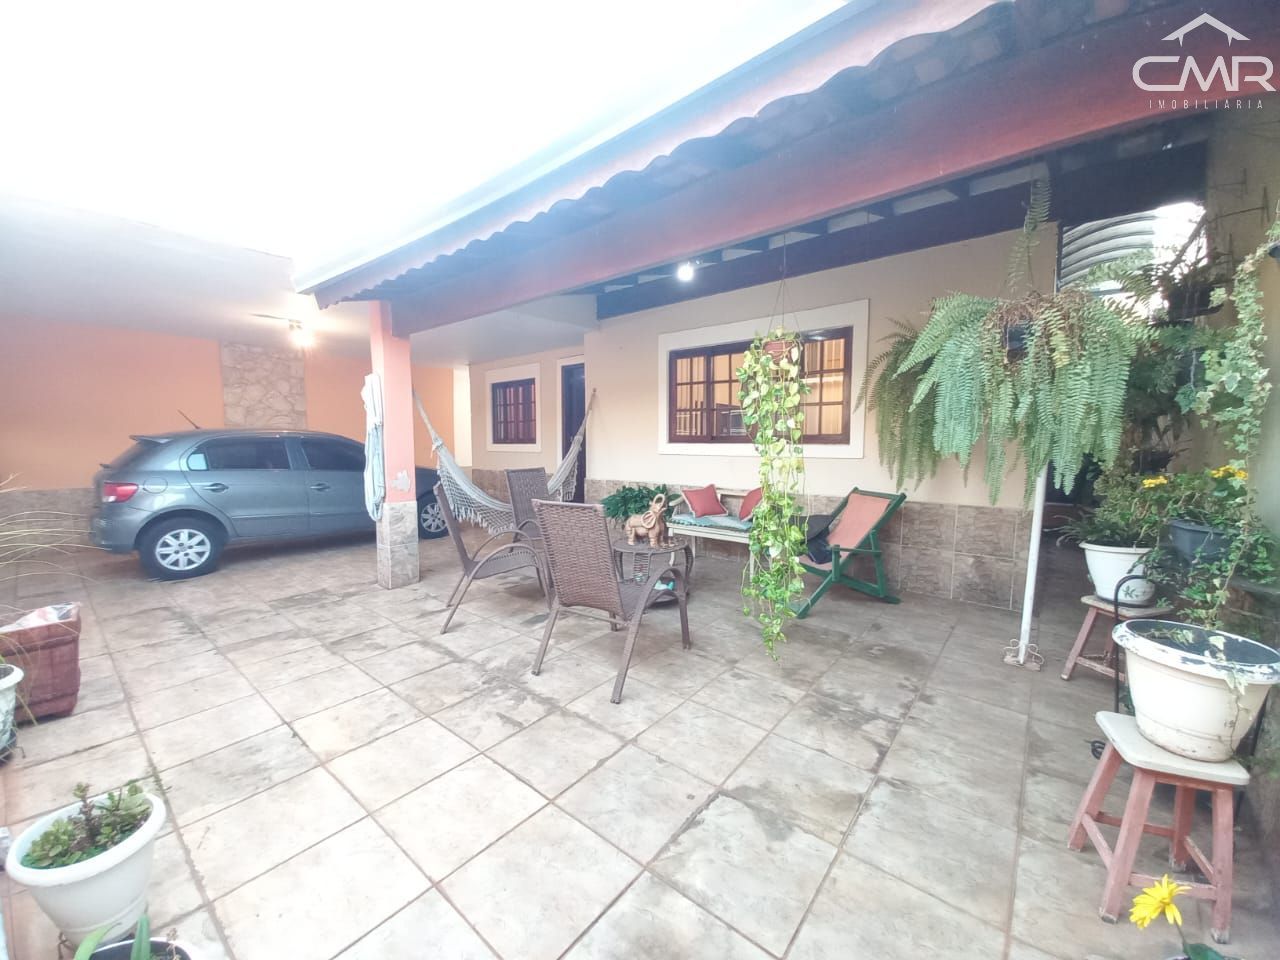 Casa  venda  no Residencial Eldorado - Piracicaba, SP. Imveis